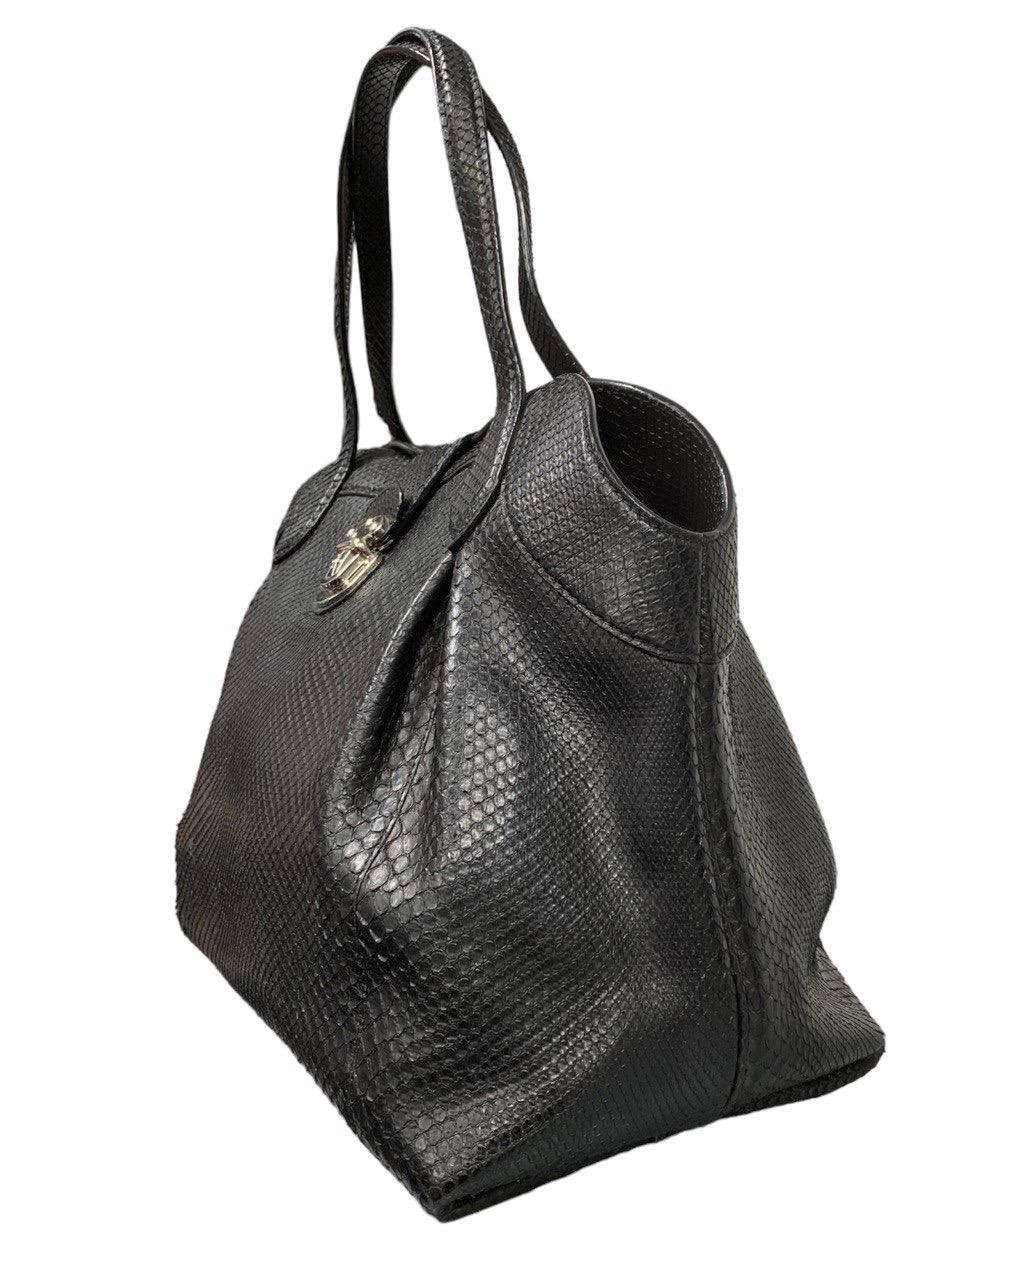 Louis Vuitton signierte Tasche, Modell Mahina Cirrus, aus schwarzem Pythonleder mit silberner Hardware.

Ausgestattet mit doppeltem Ledergriff, um die Tasche in der Hand oder über der Schulter zu tragen.

Innen mit schwarzem Leder gefüttert, recht